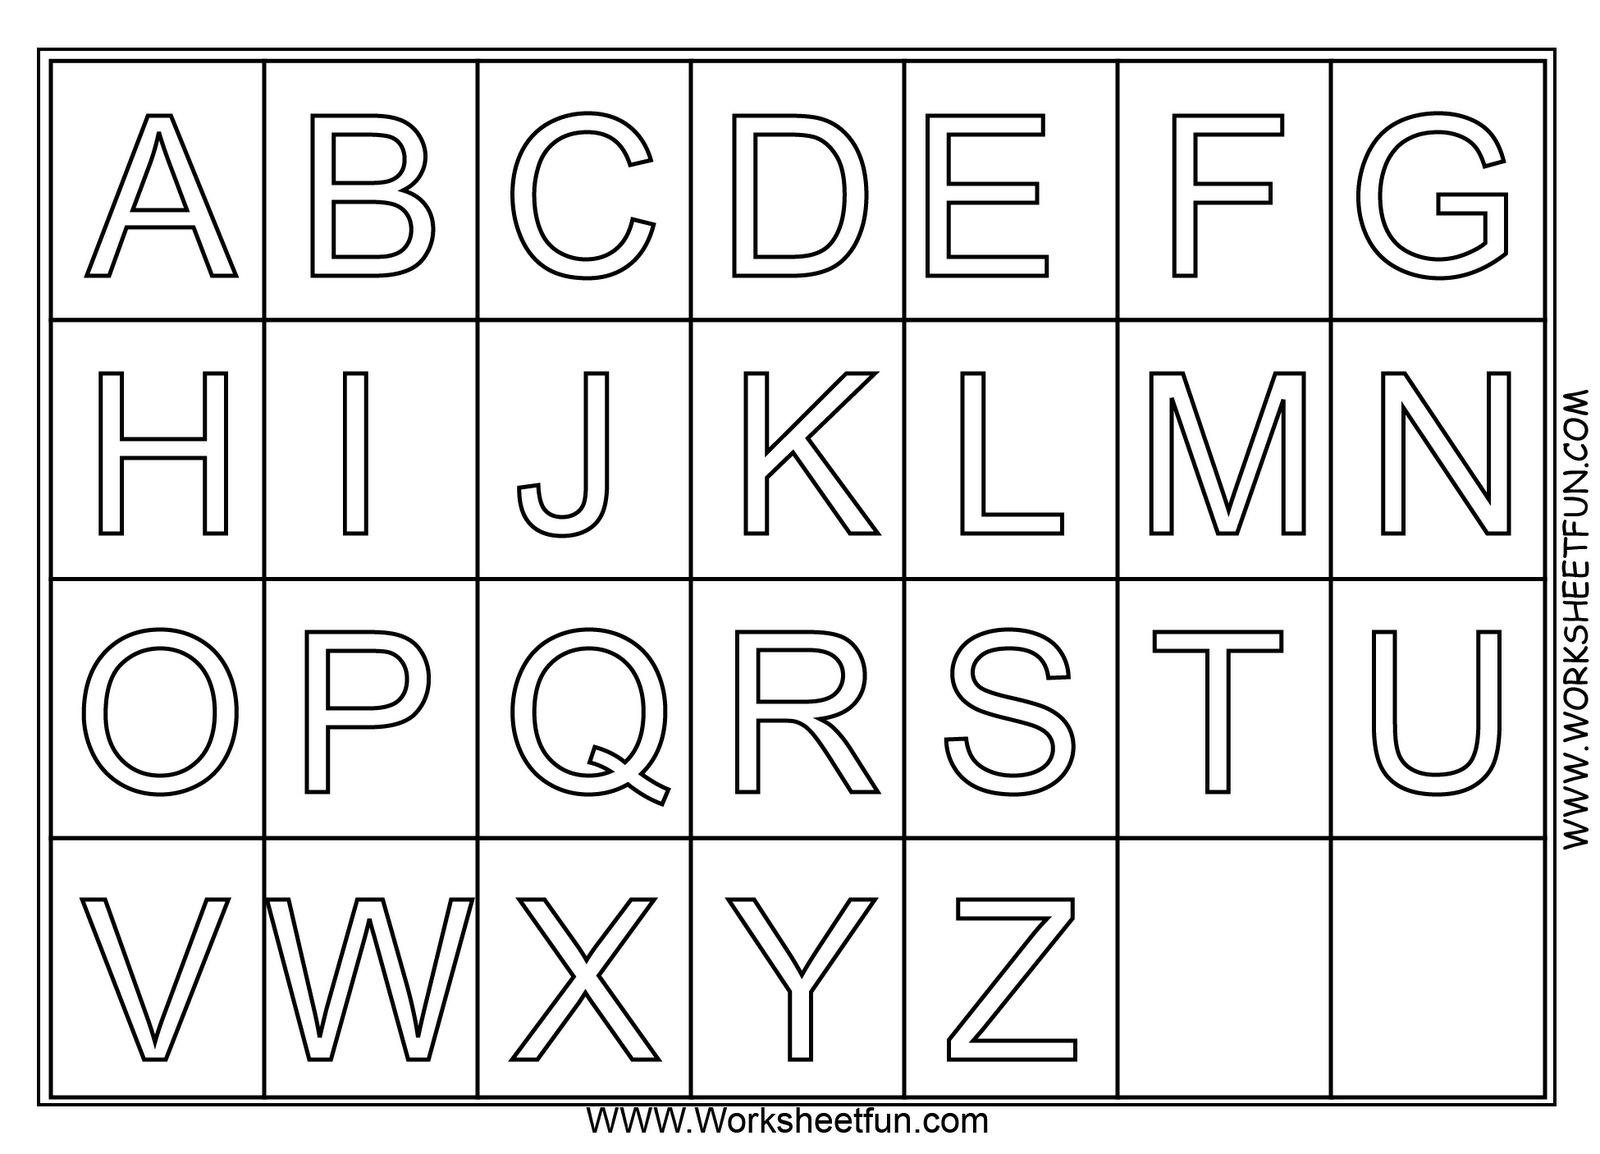 coloring sheets for kindergarten for alphabets google image result for httpwwwkindergartenworksheets for alphabets for coloring sheets kindergarten 